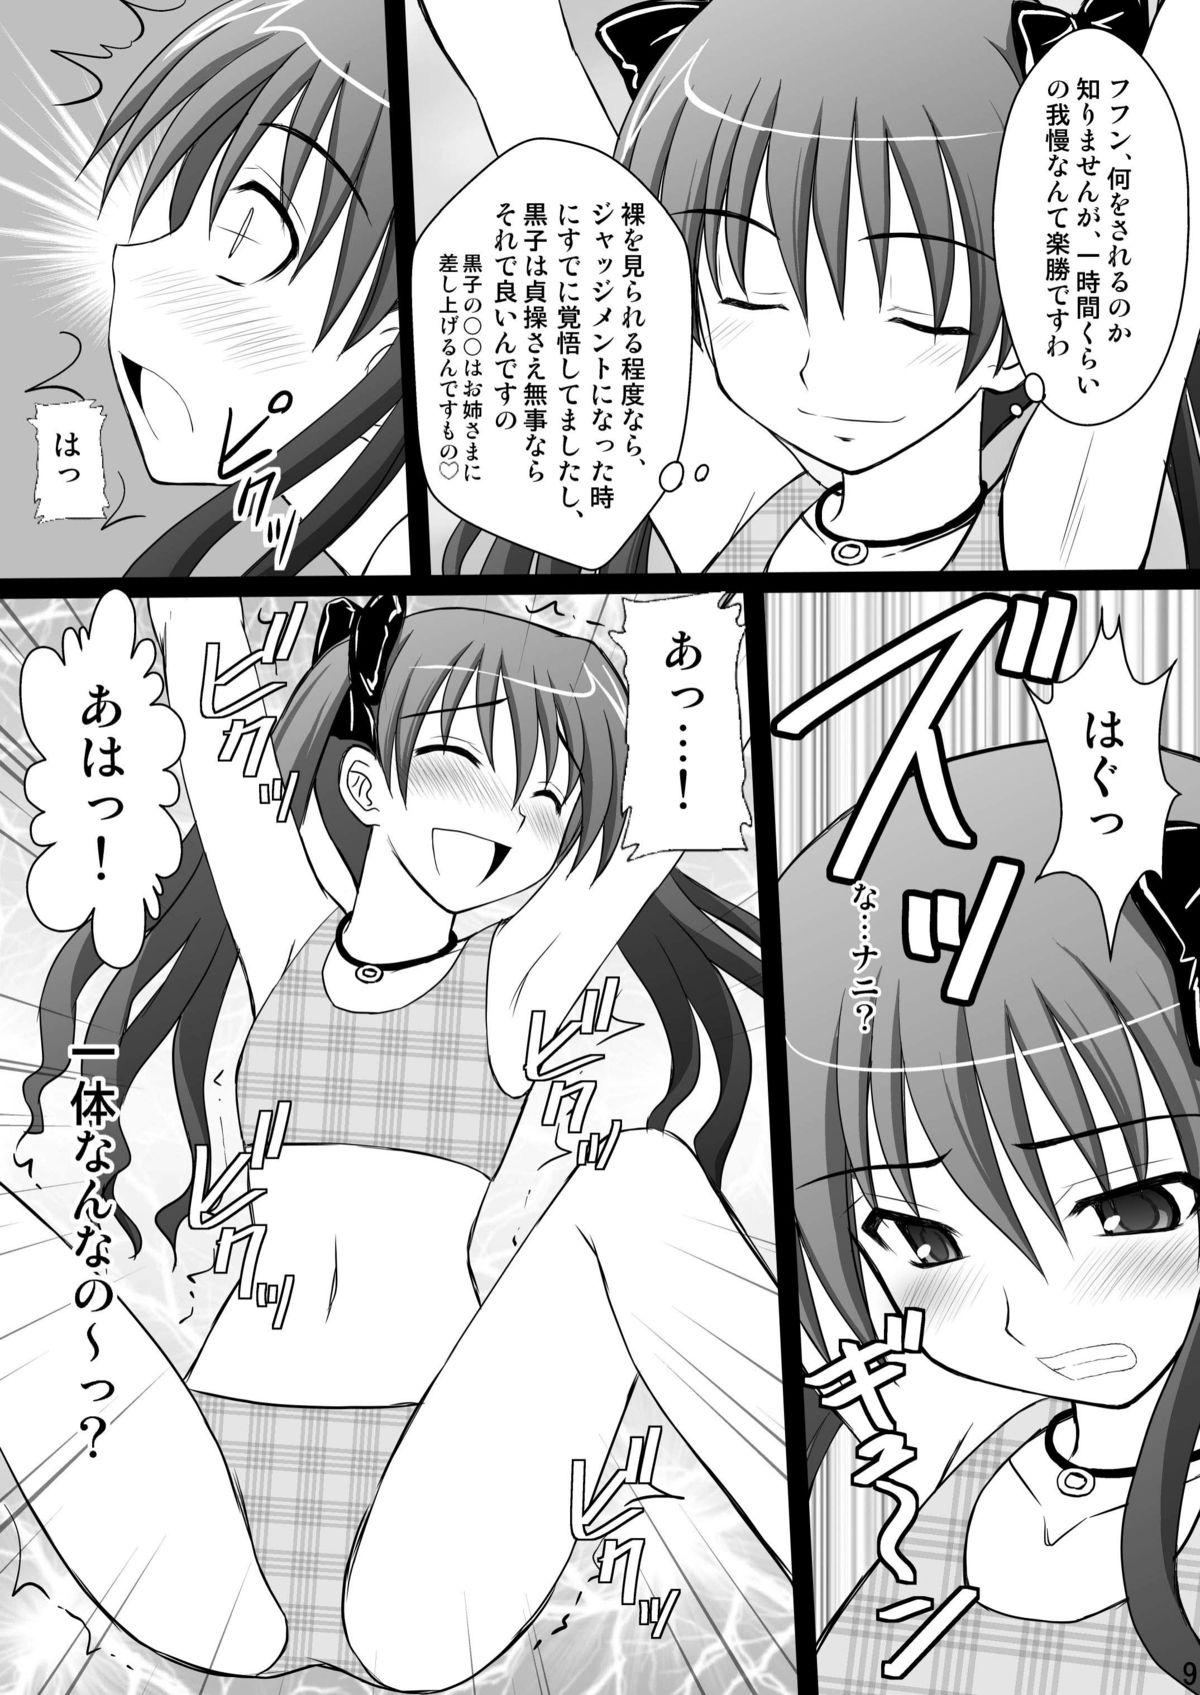 Lesbians Kuroko Dai Monzetsu Jigoku Hen - Toaru kagaku no railgun Glam - Page 9